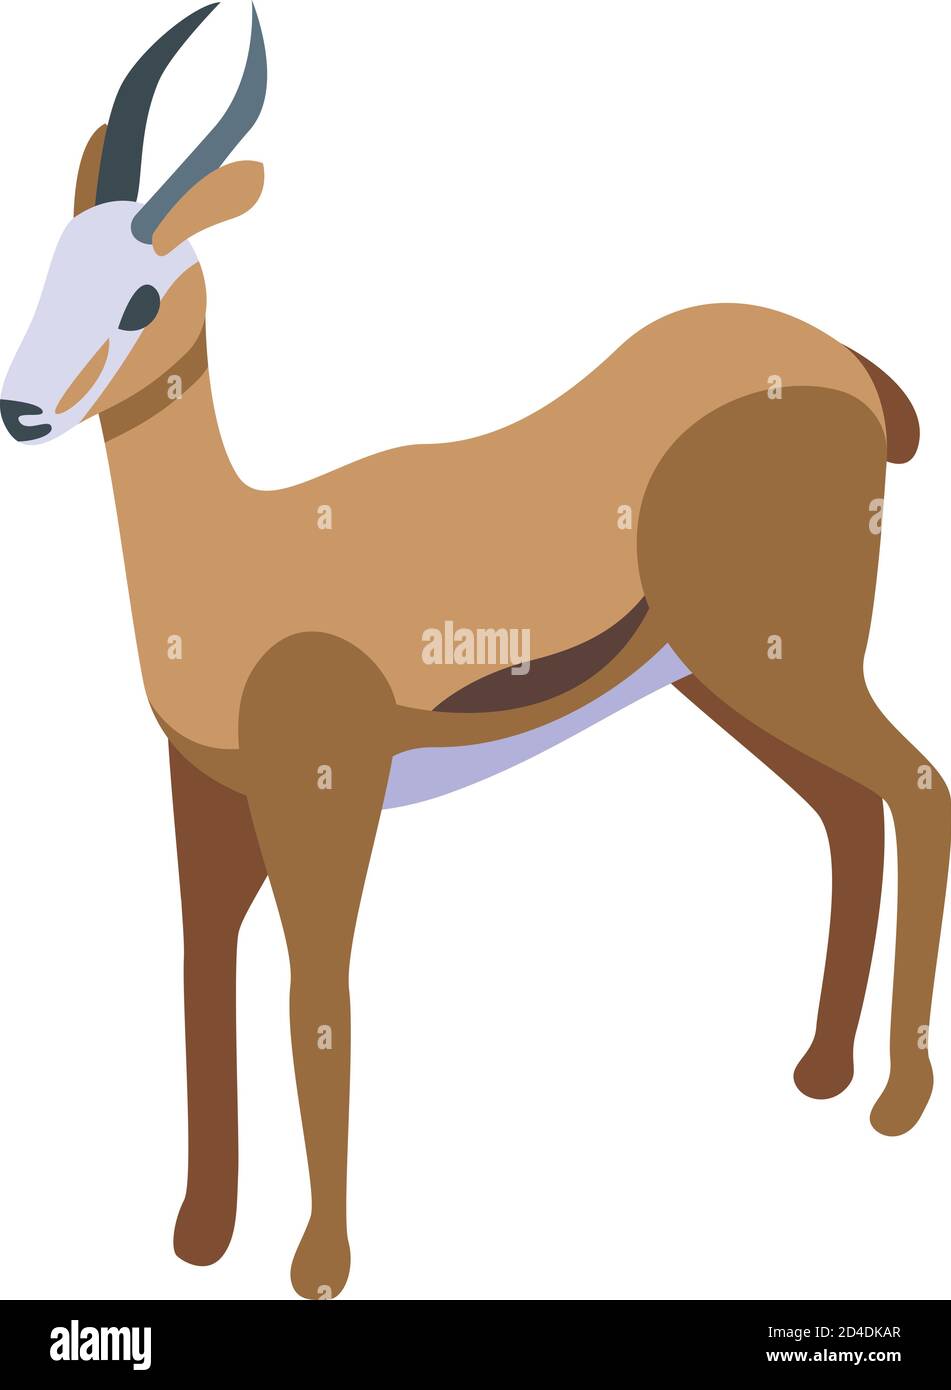 Icône représentant une gazelle Springbok, style isométrique Illustration de Vecteur